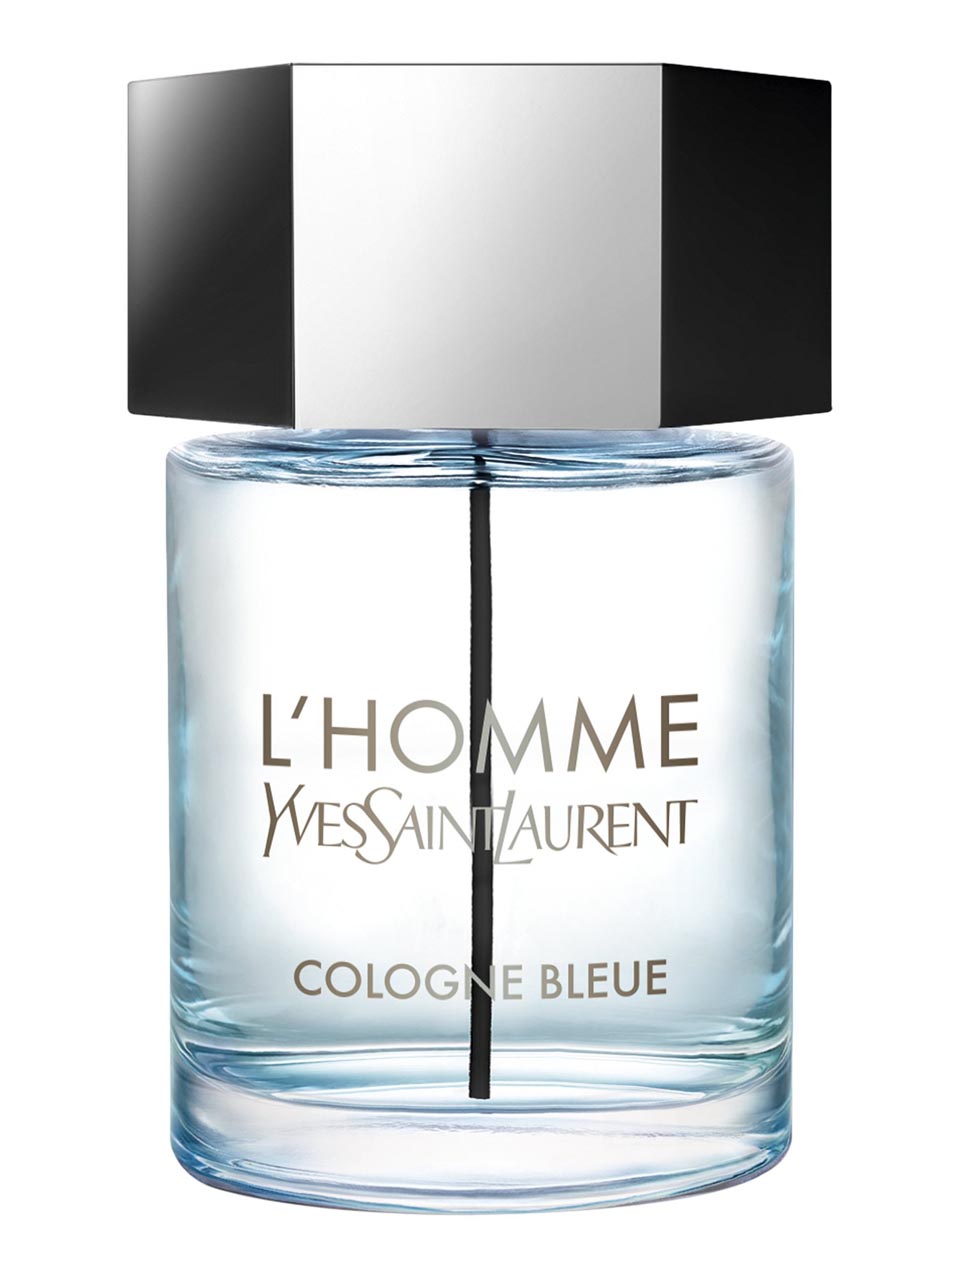 Yves Saint Laurent L'Homme Cologne Bleue Eau de Toilette 100 ml null - onesize - 1